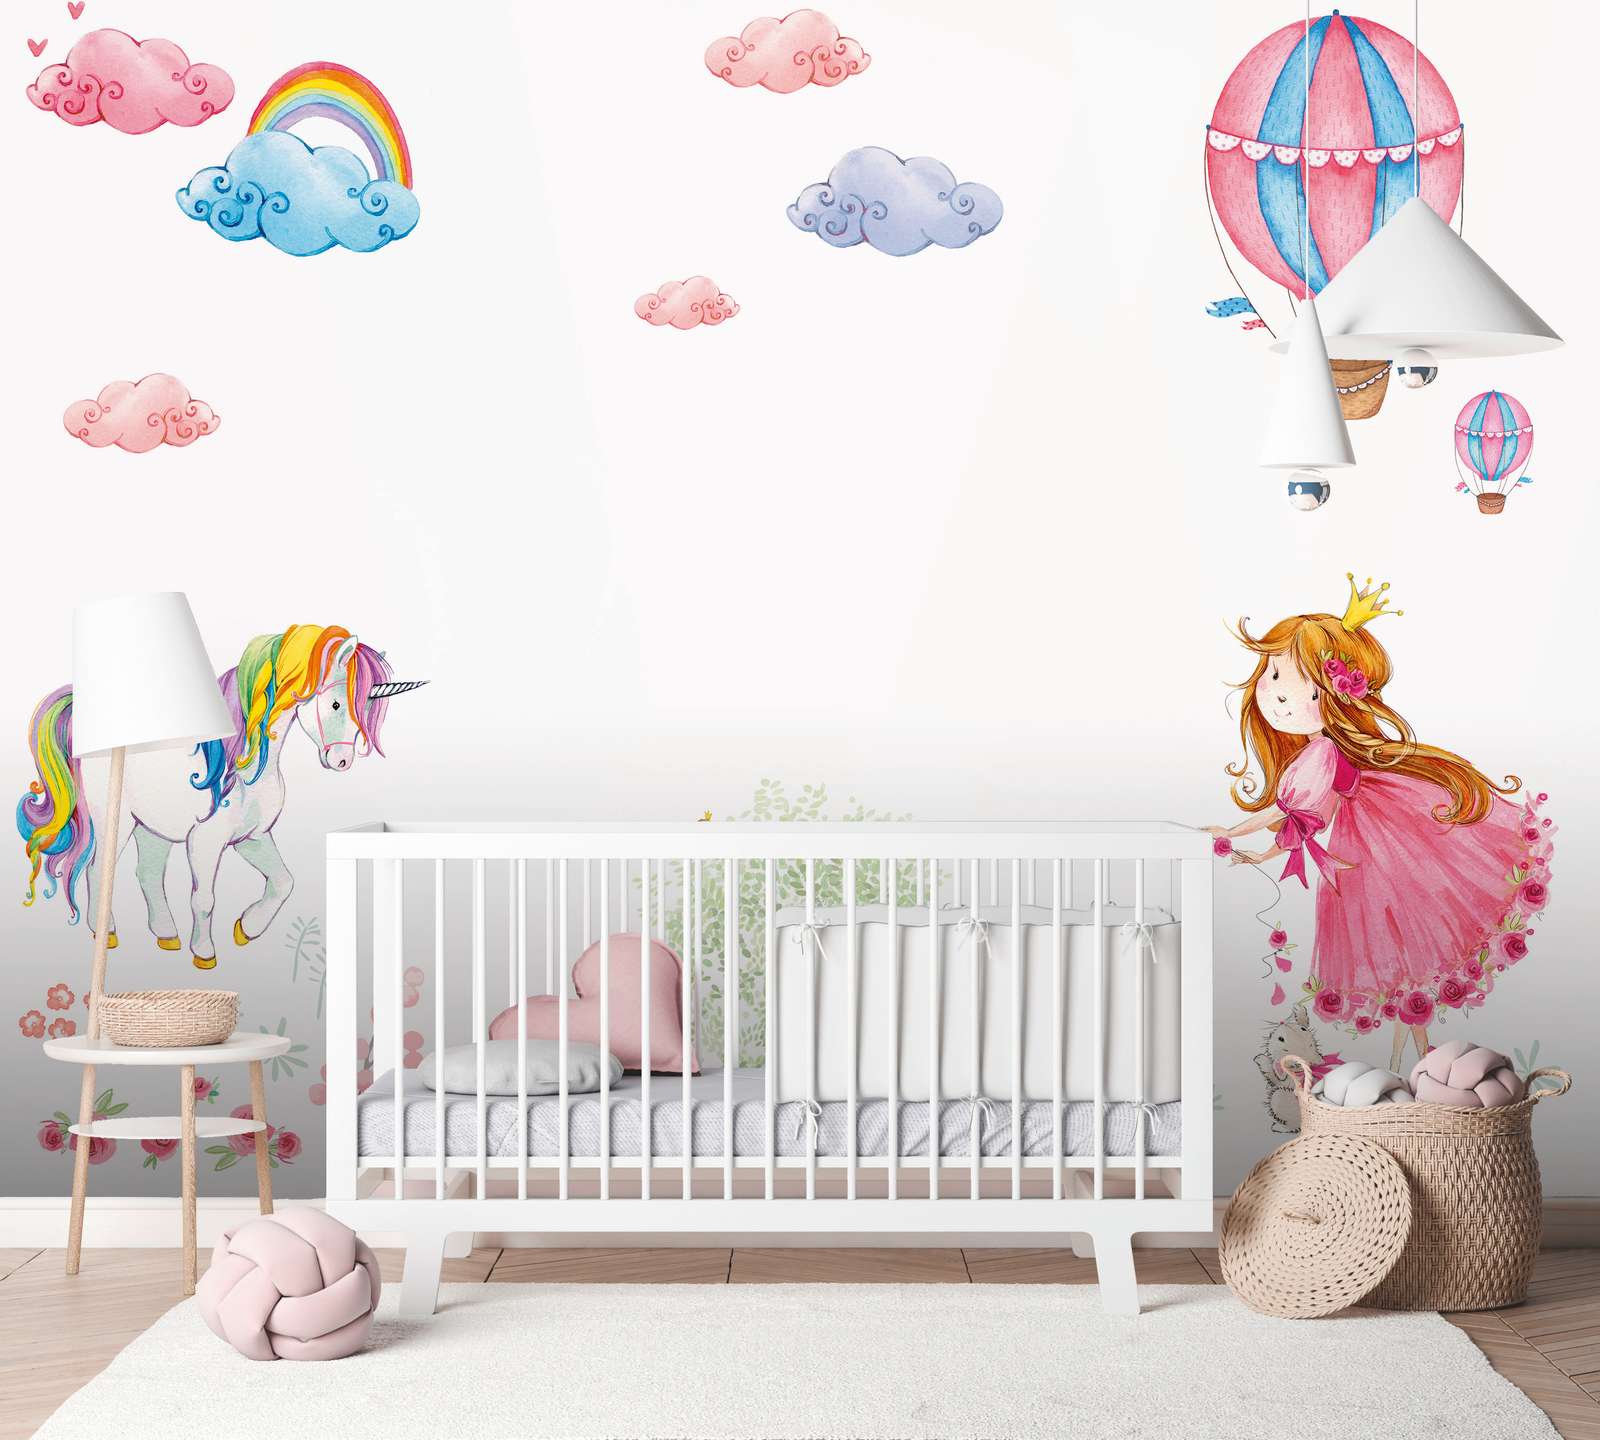             Kinderkamer muurschildering met prinses en eenhoorn - Roze, Bont, Wit
        